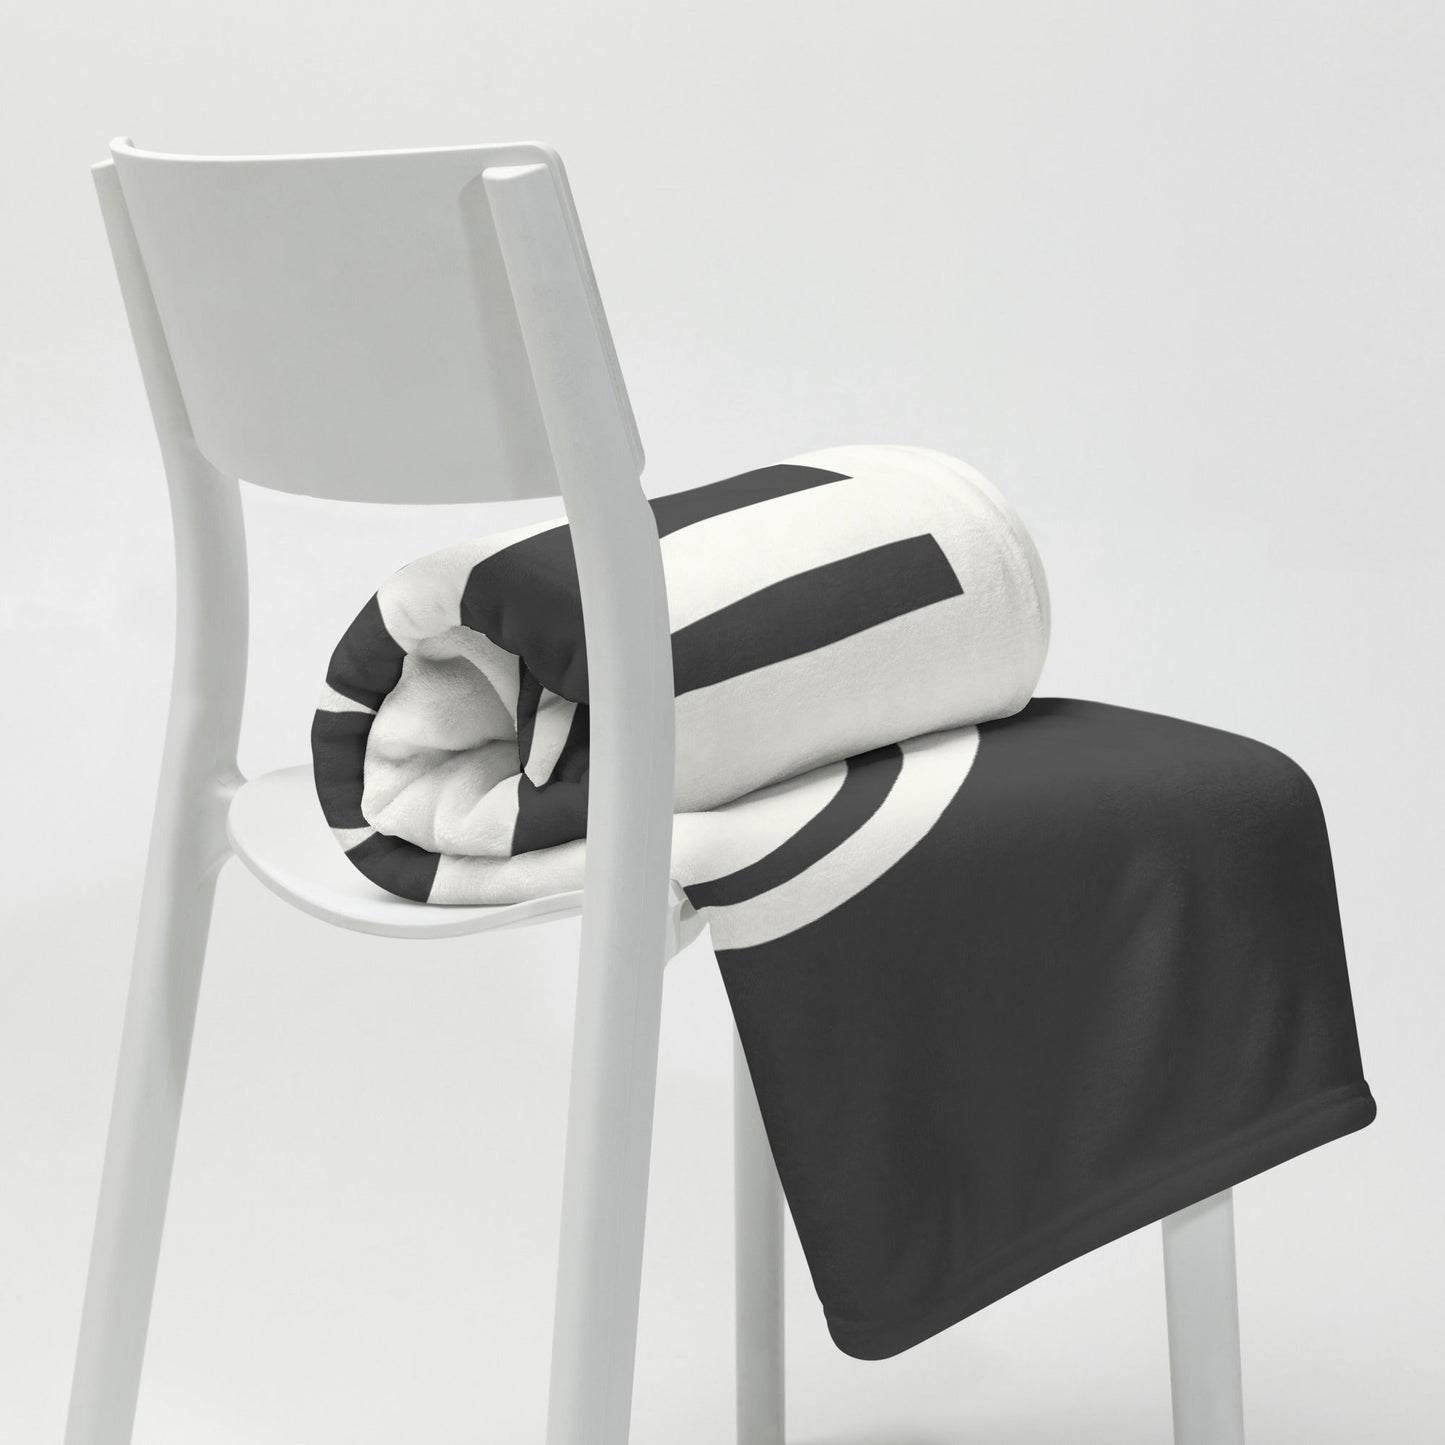 Unique Travel Gift Throw Blanket - White Oval • MIA Miami • YHM Designs - Image 03